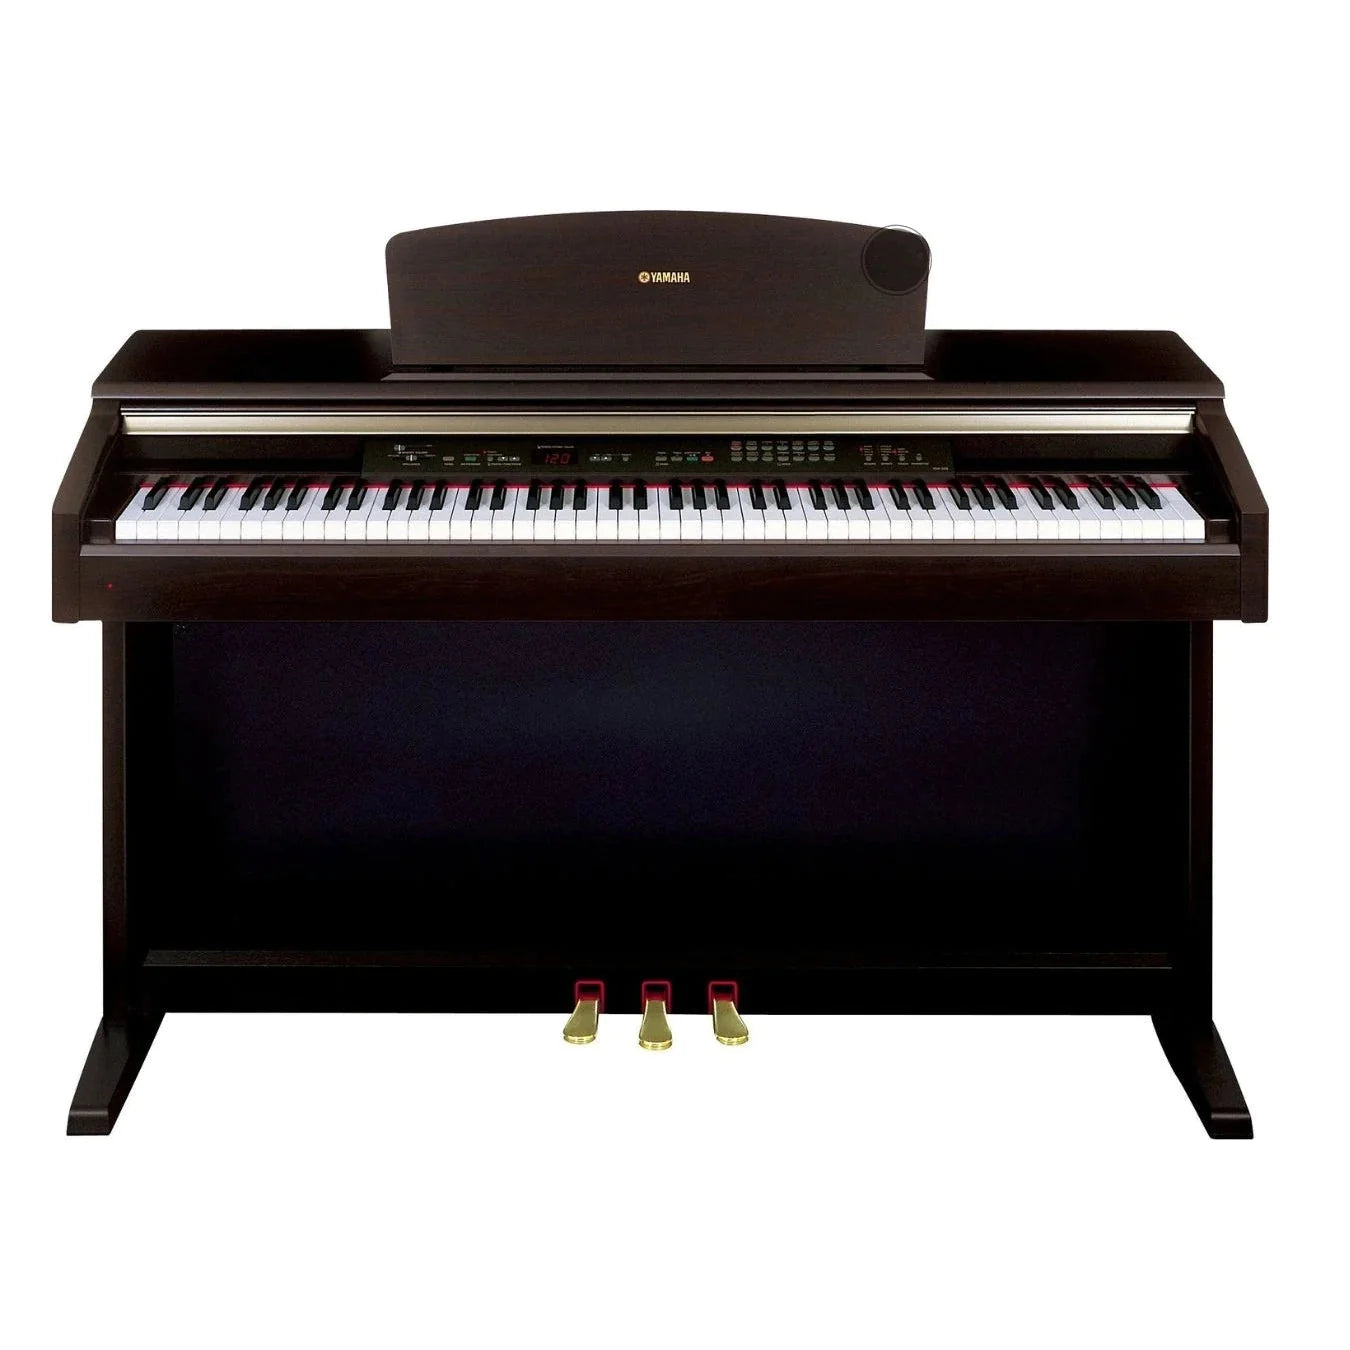 Đàn Piano Điện Yamaha CLP130 - Qua Sử Dụng